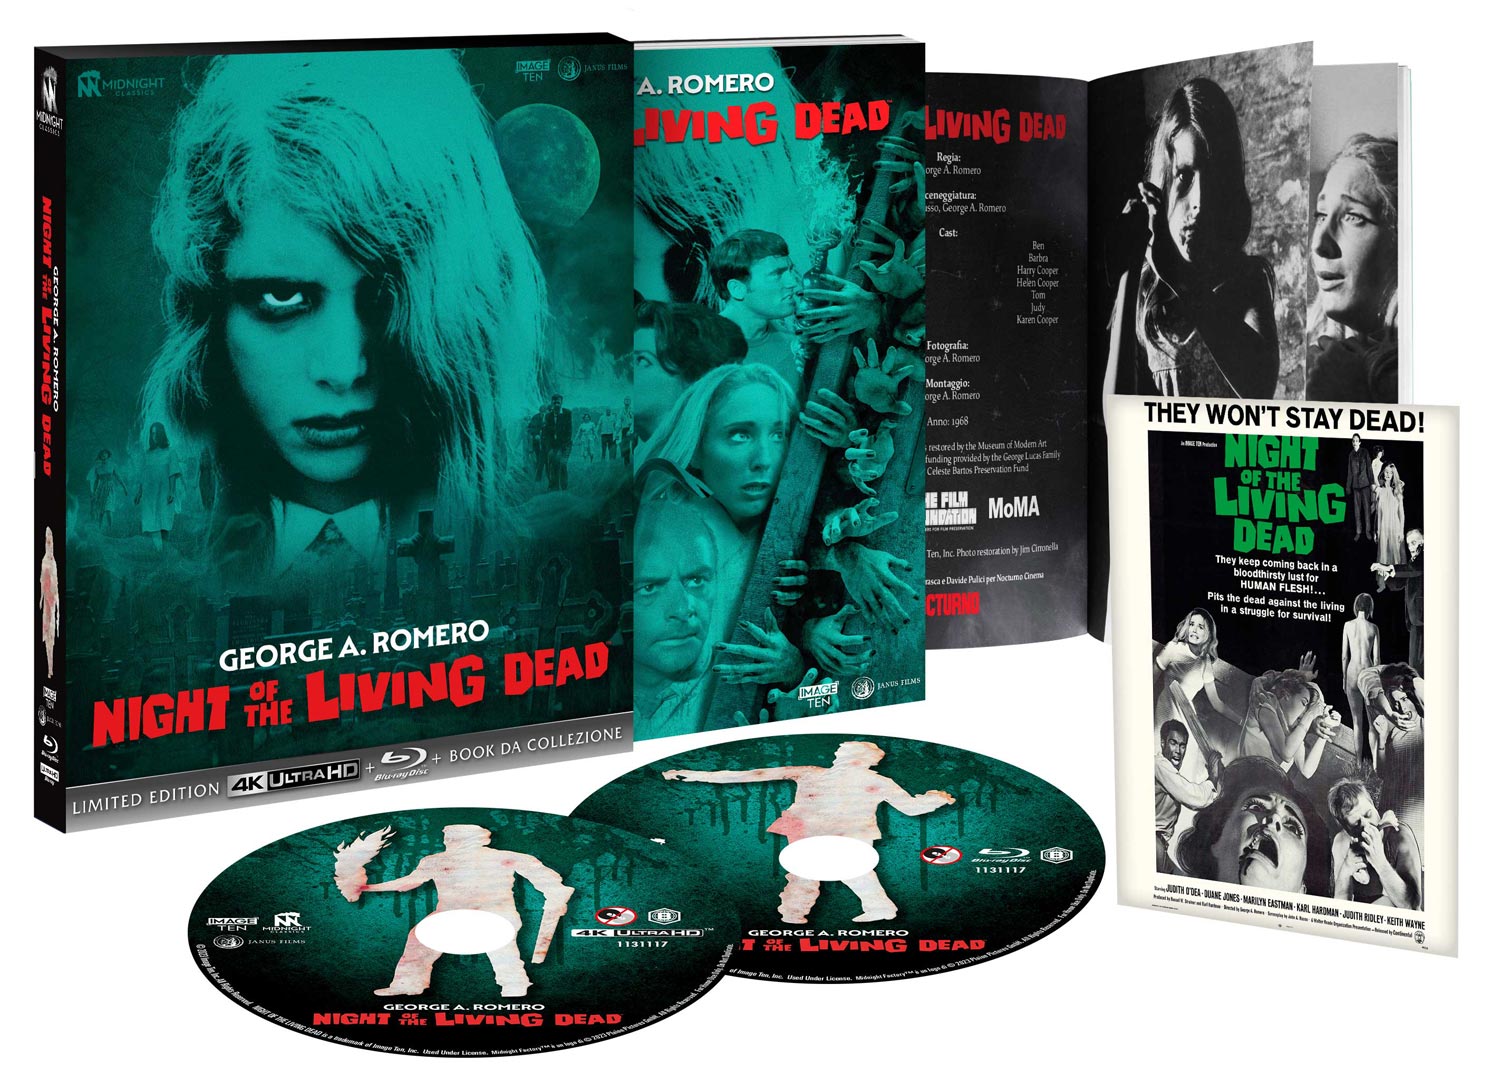 Night of the living dead in edizione limitata e numerata 4K UHD + Blu-ray